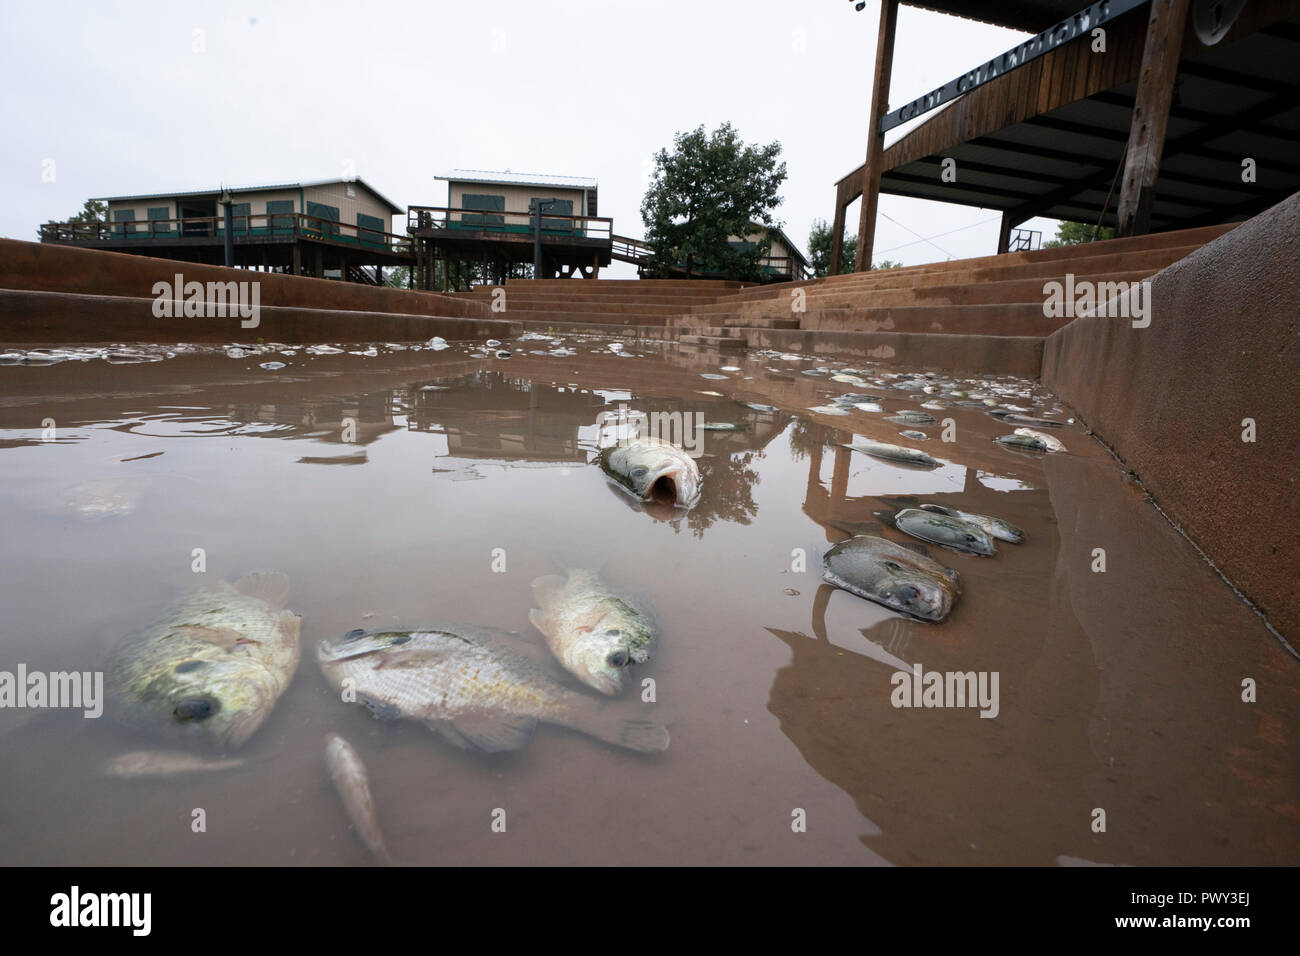 Toten und sterbenden Fisch am Ufer des Lake LBJ als floodwaters zu schwinden beginnen. Der Bereich war durch Datensatz Regen entlang der Llano River, der See sehr schnell angehoben und gestrandeten Fische im flachen Wasser schlagen. Stockfoto